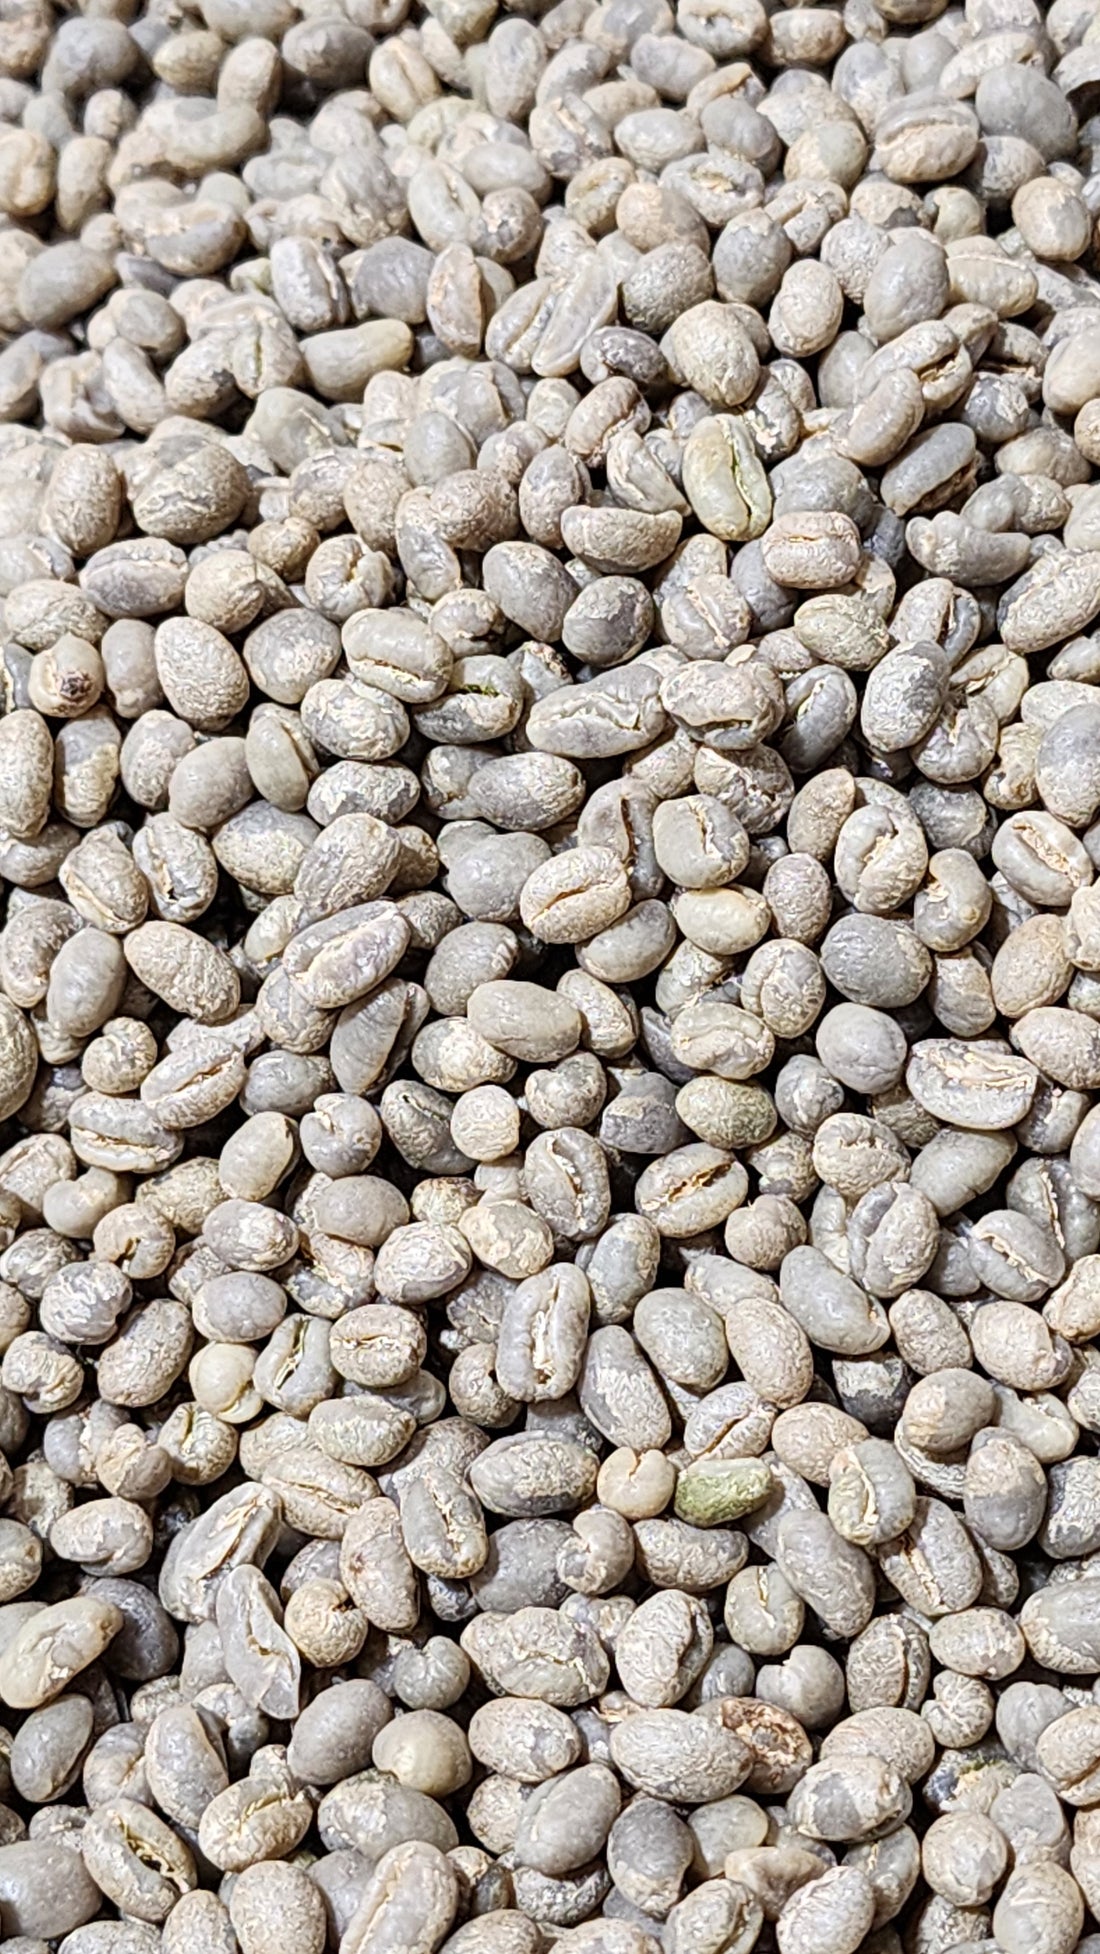 Tanzania Peaberry green coffee